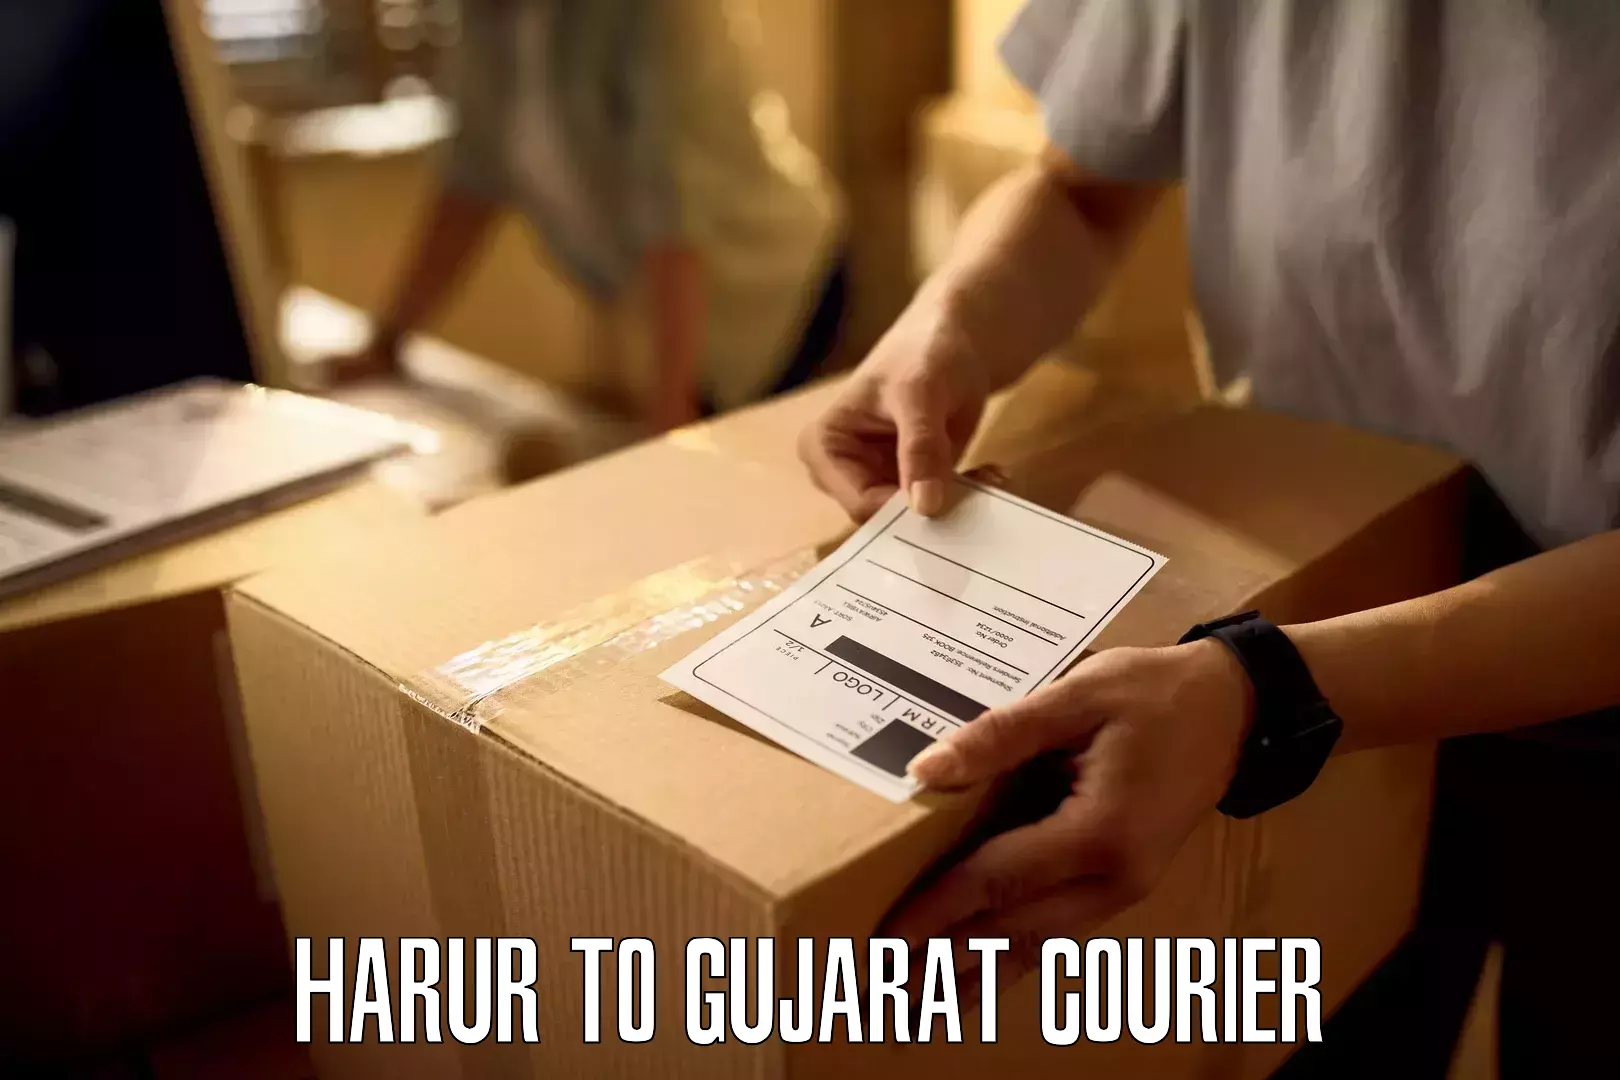 Courier service efficiency Harur to Kodinar